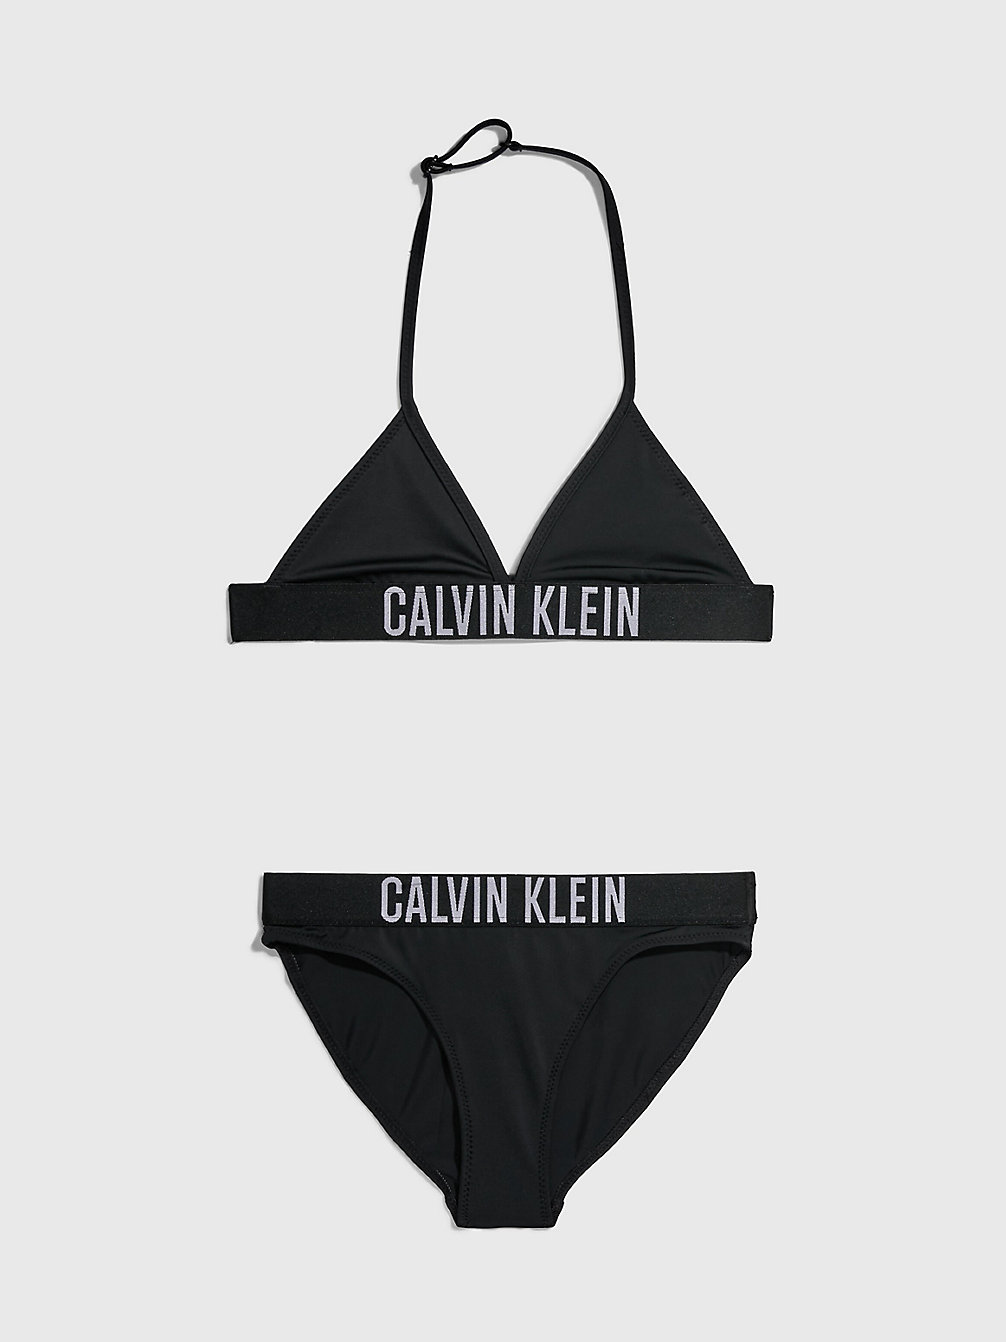 PVH BLACK > Triangel-Bikini-Set Für Mädchen - Intense Power > undefined Maedchen - Calvin Klein